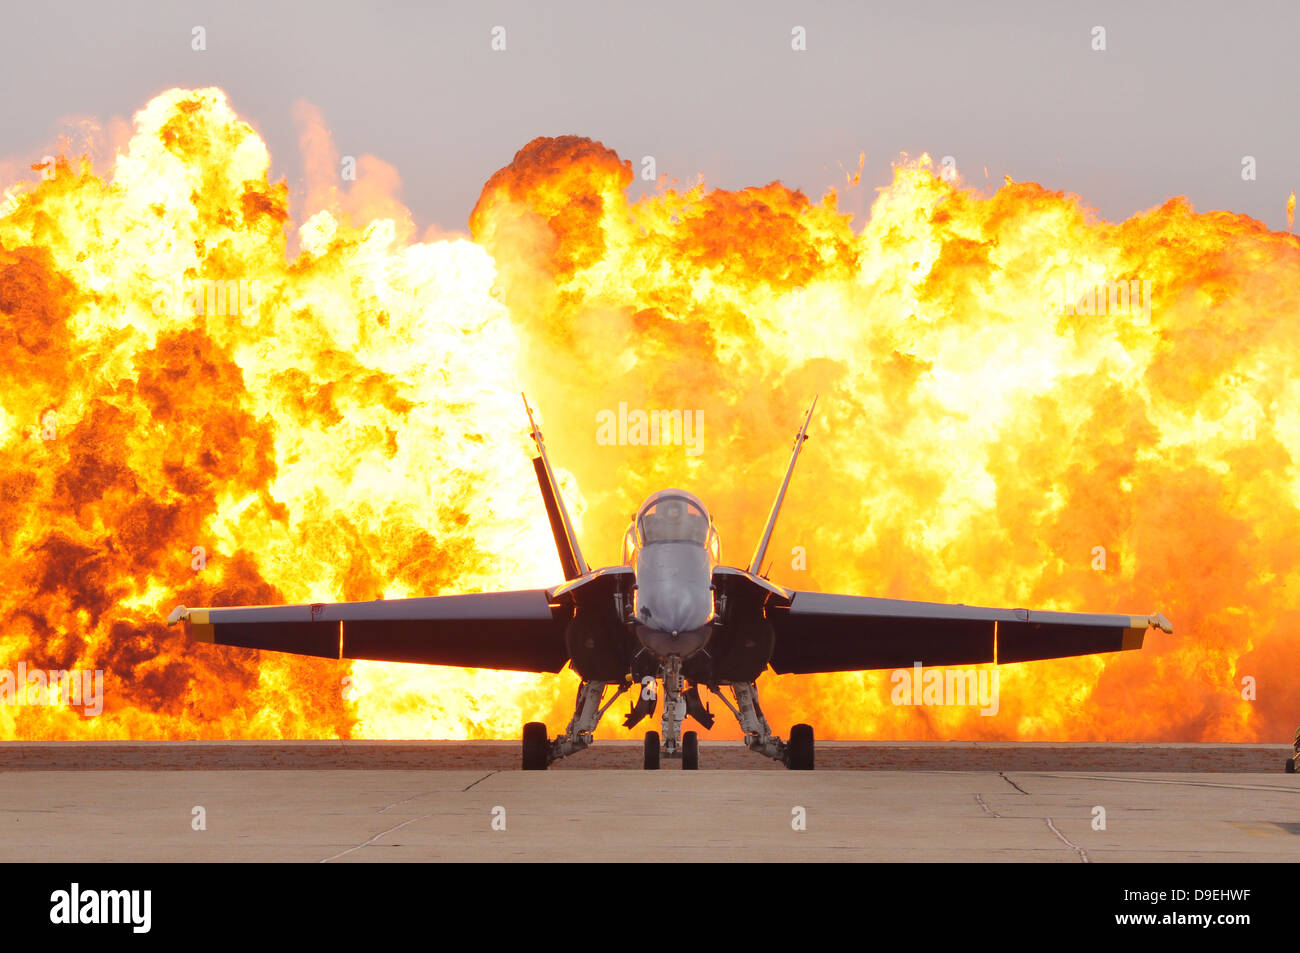 Un F/A-18 Hornet est situé sur l'axe de vol comme un mur de feu explose derrière elle. Banque D'Images